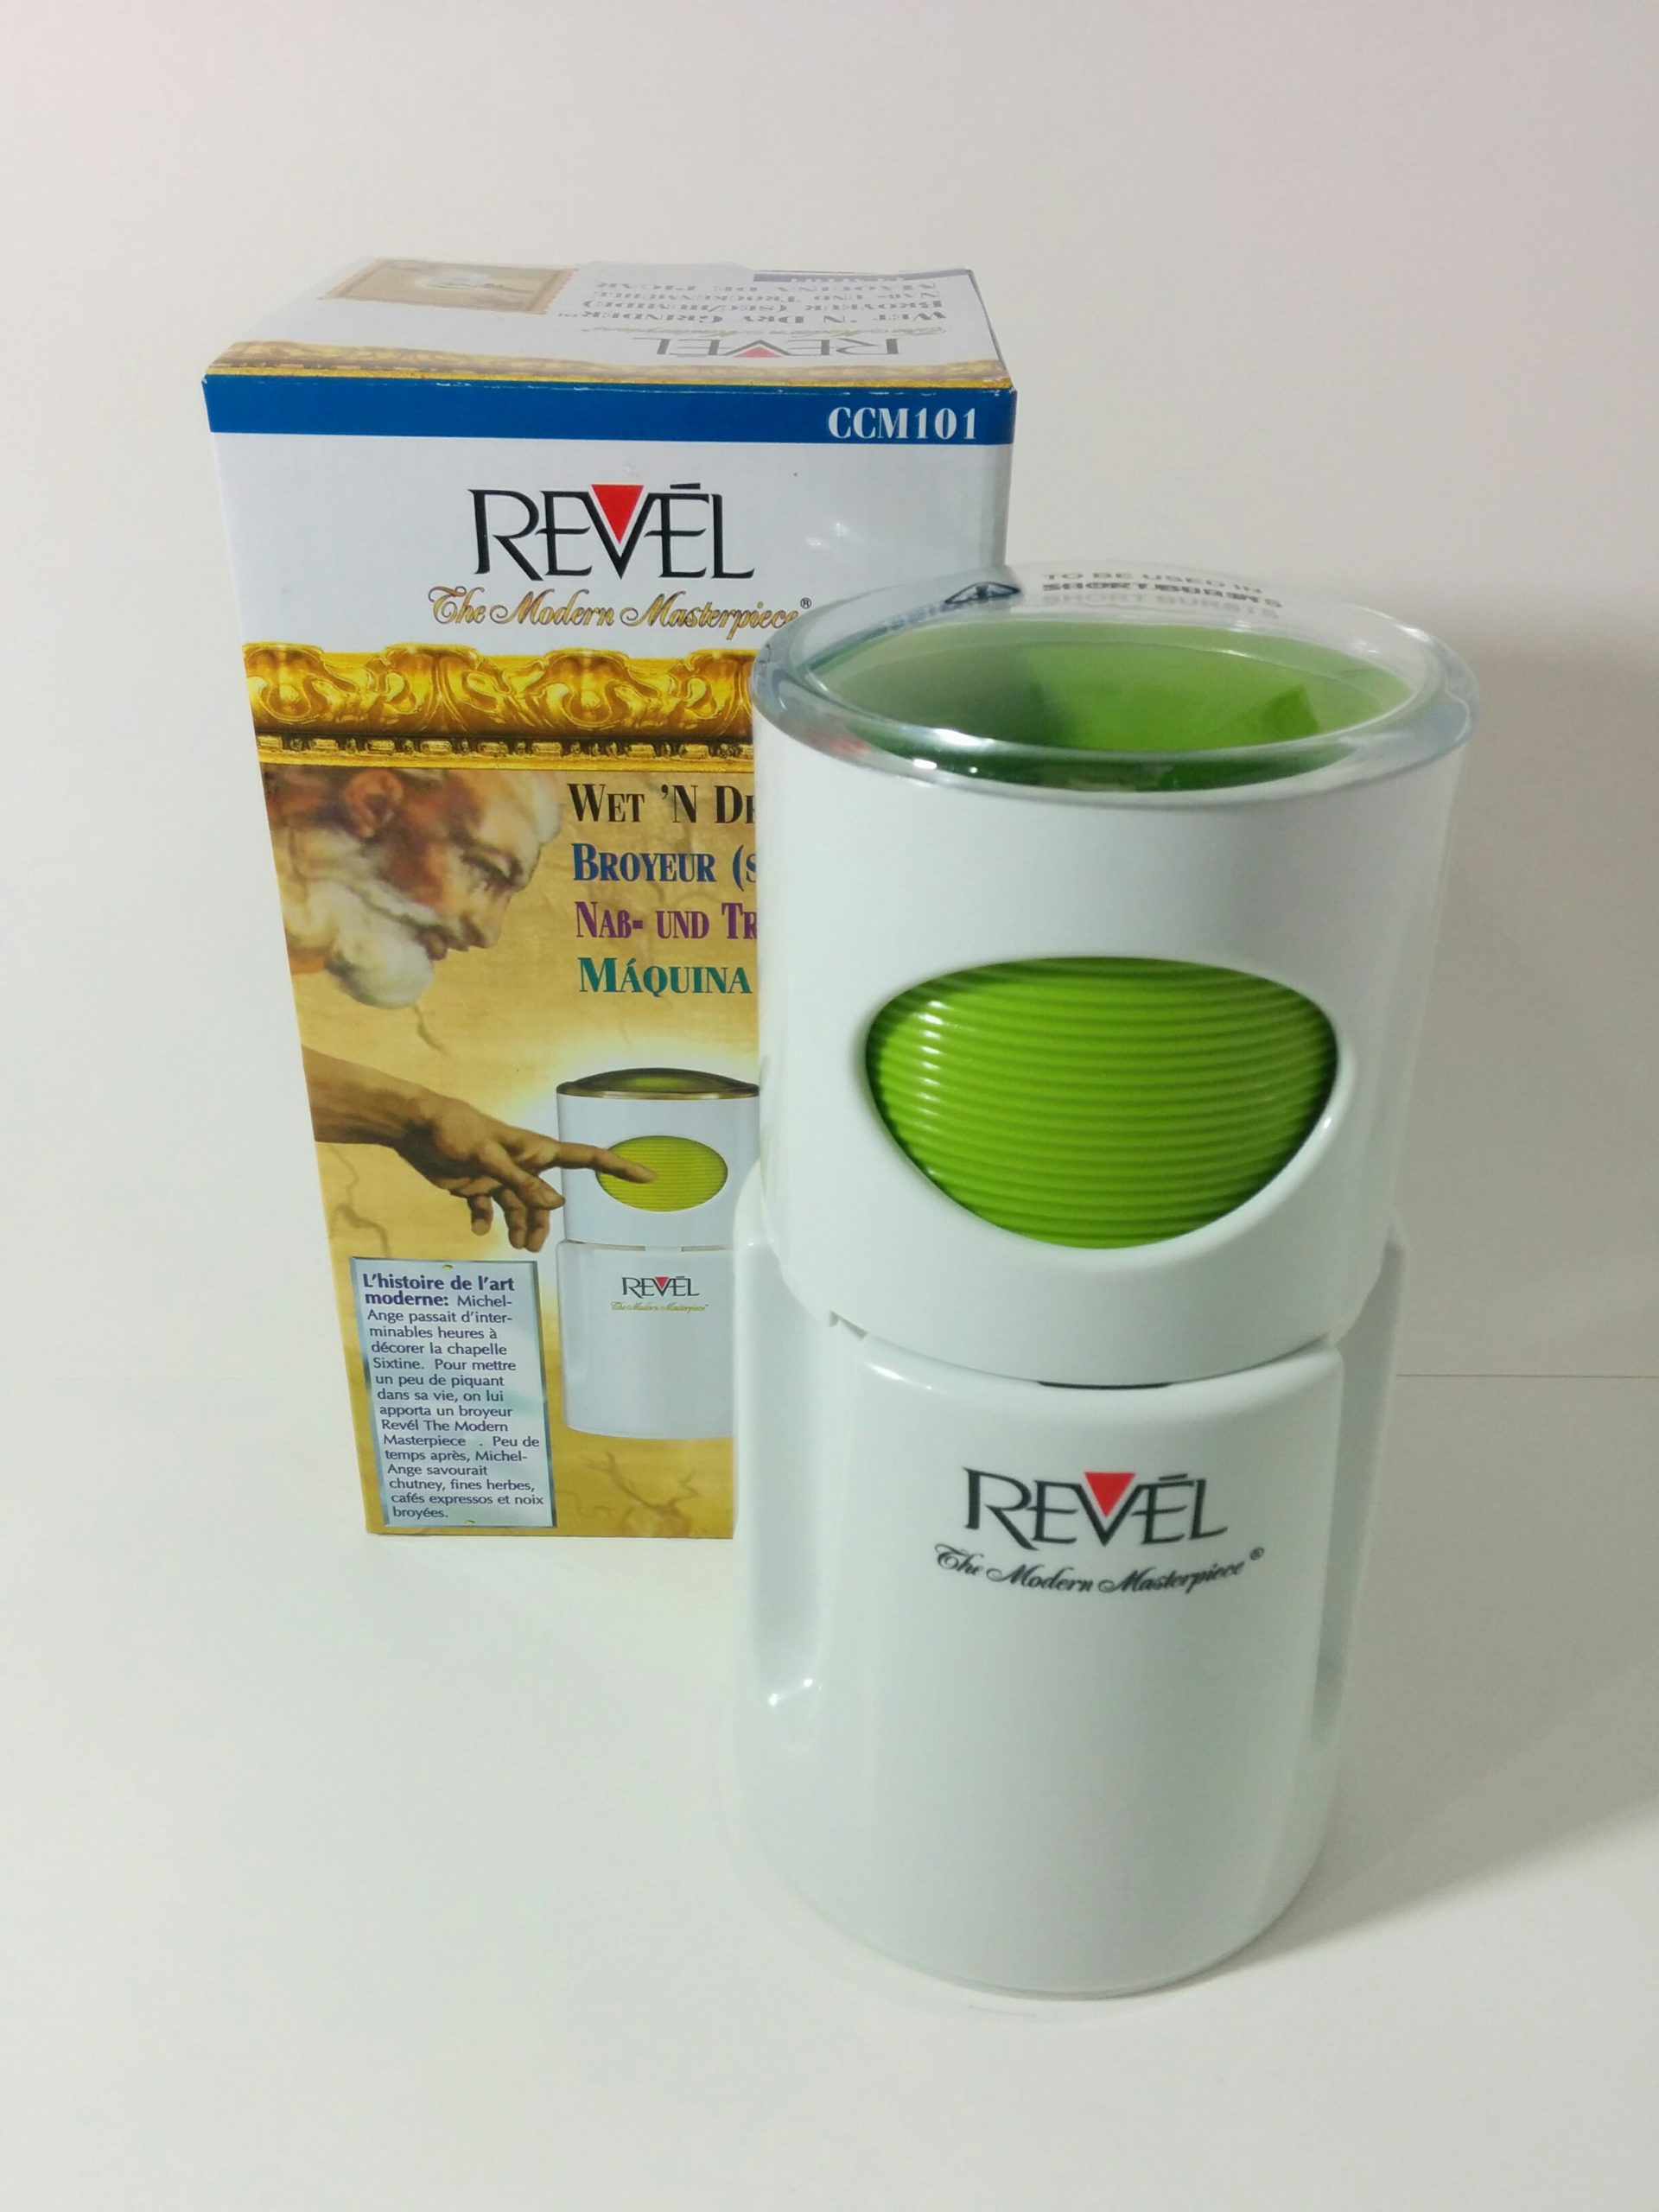 Revel CCM104 Wet N Dry Grinder White/Green 